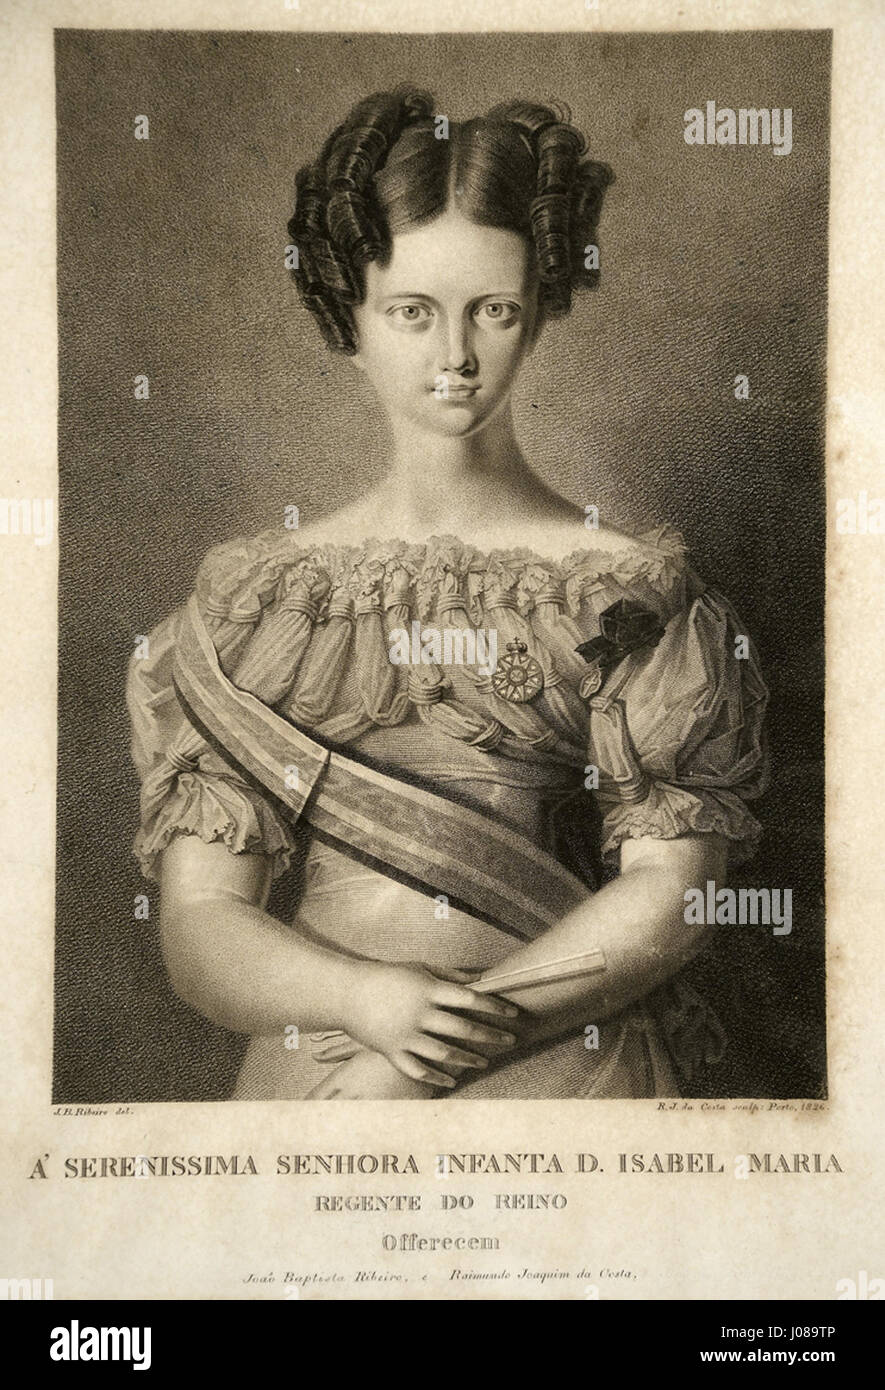 João Batista Ribeiro, Raimundo Joaquim da Costa - Retrato da la Infanta Doña María Isabel de Braganza, regente de Portugal Foto de stock